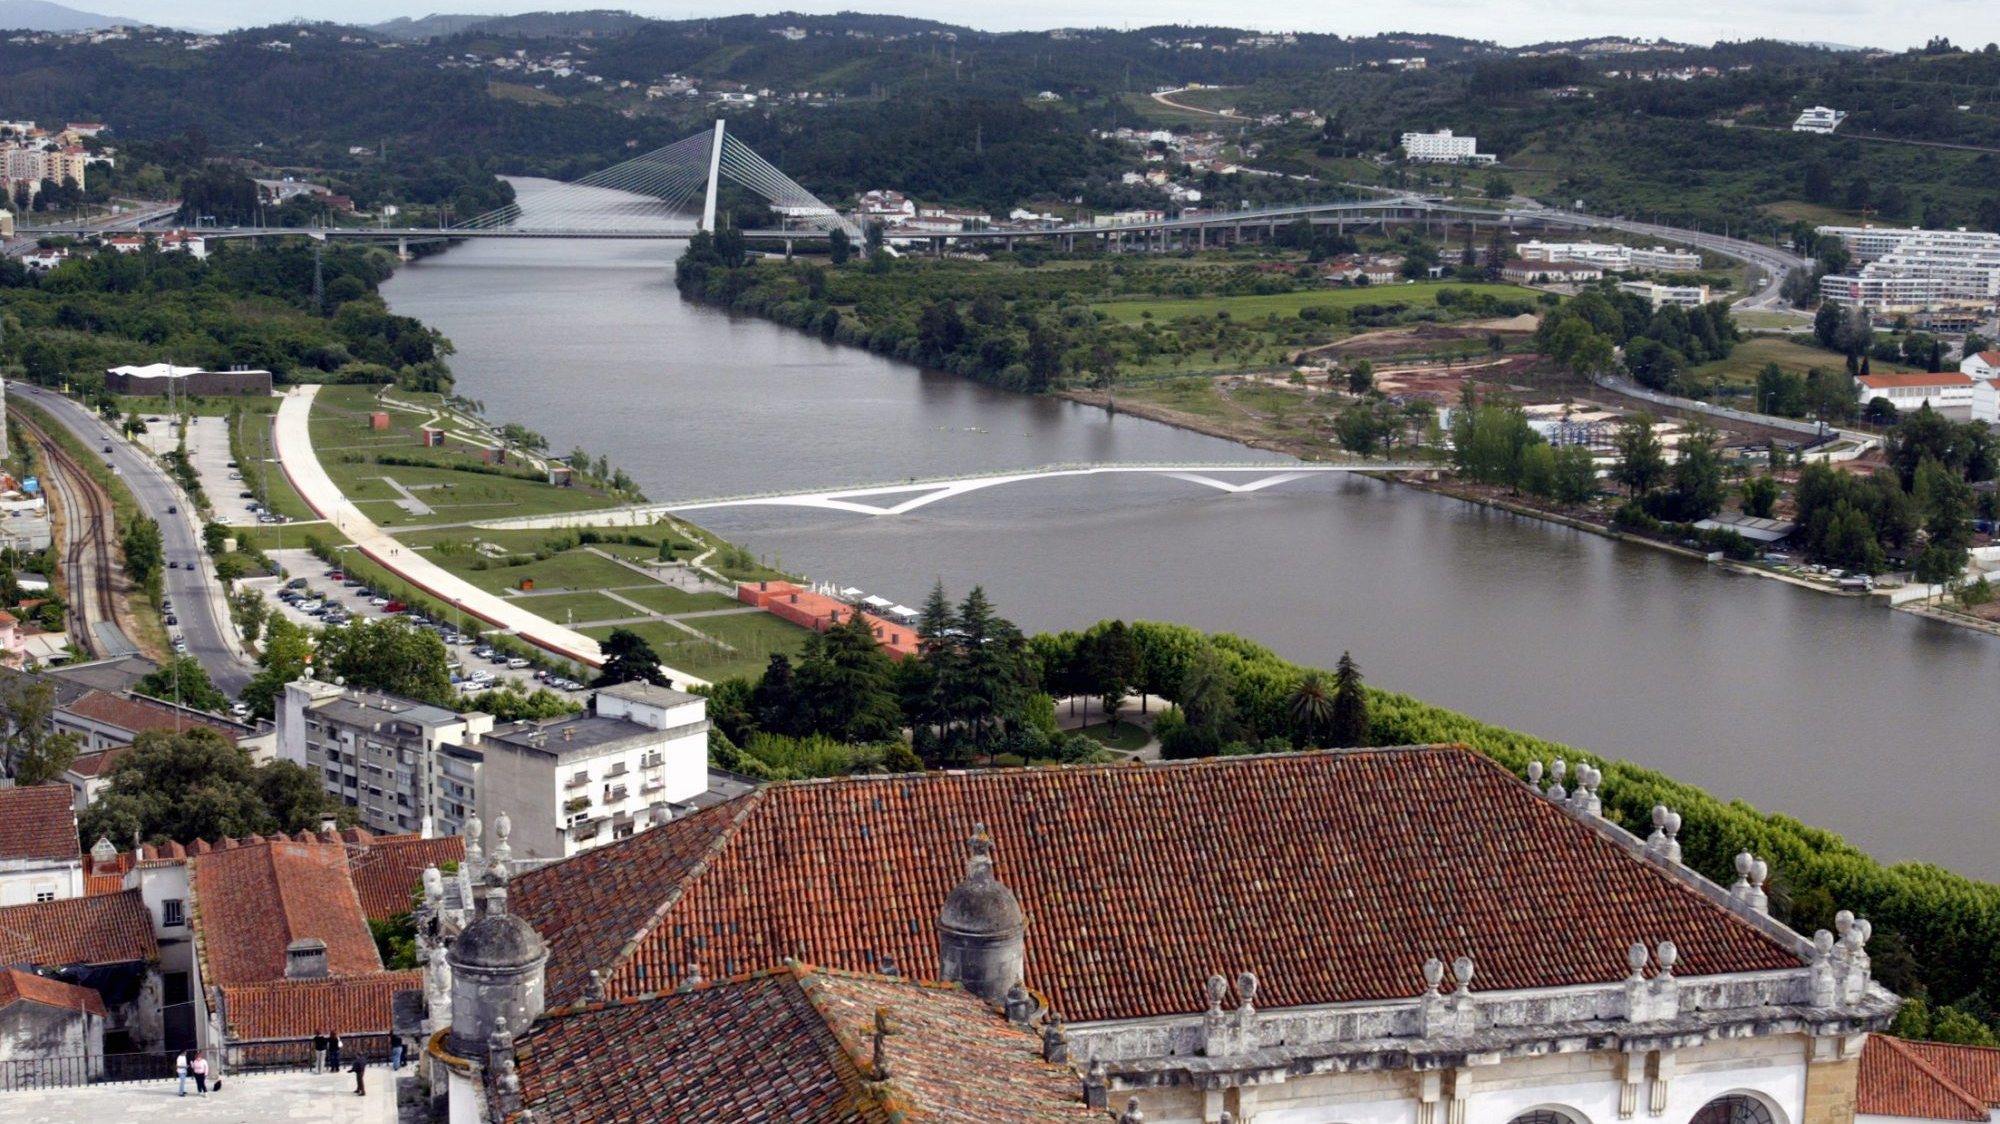 A Câmara de Coimbra revelou que a candidatura da Baixa da cidade recebeu o terceiro maior montante a nível nacional, entre as 65 candidaturas aprovadas de um total de 160